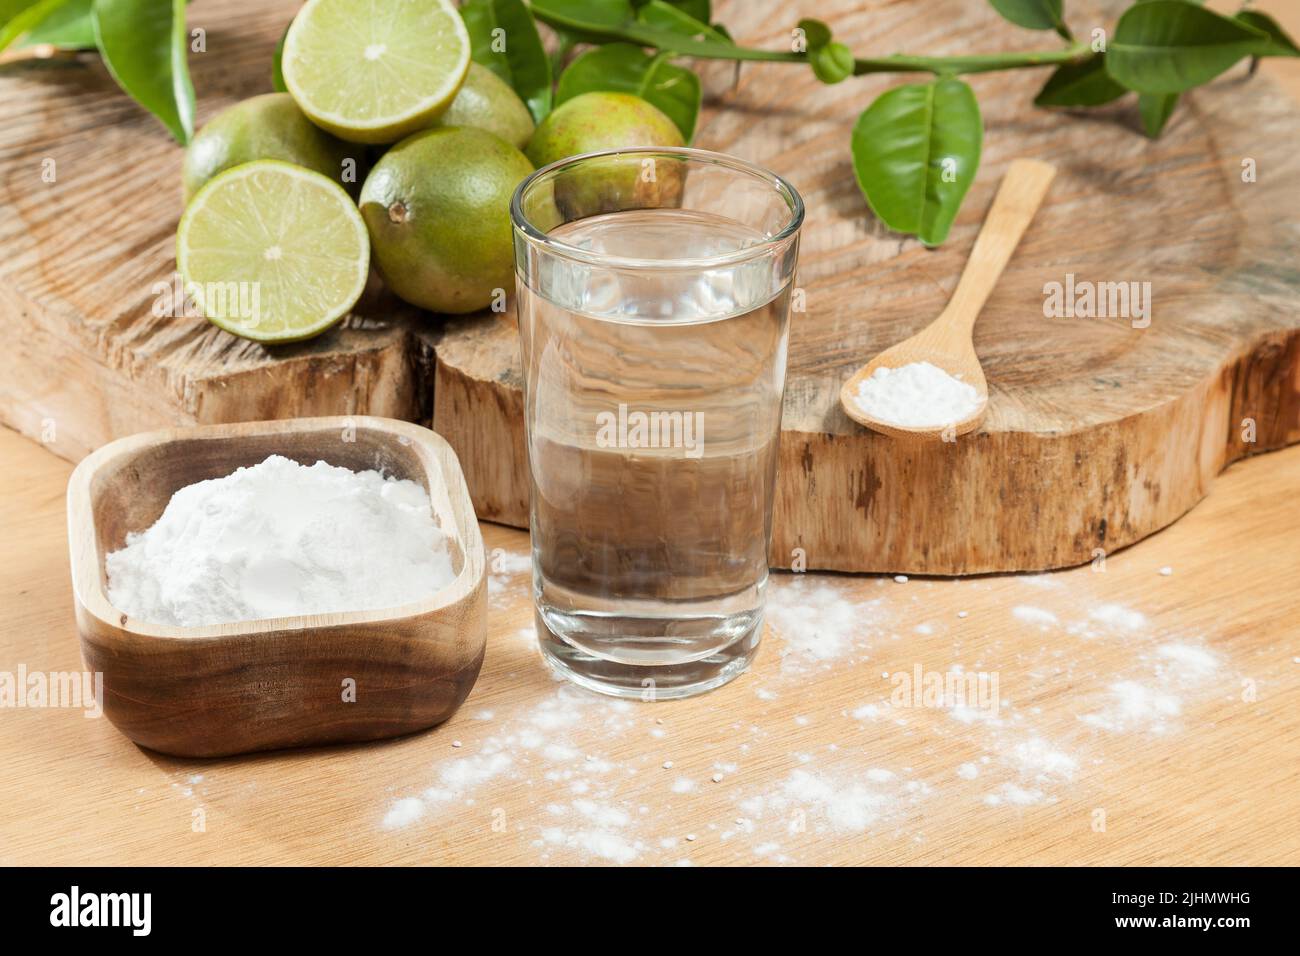 Bicarbonate de soude - bicarbonate de sodium, eau et citron. Banque D'Images